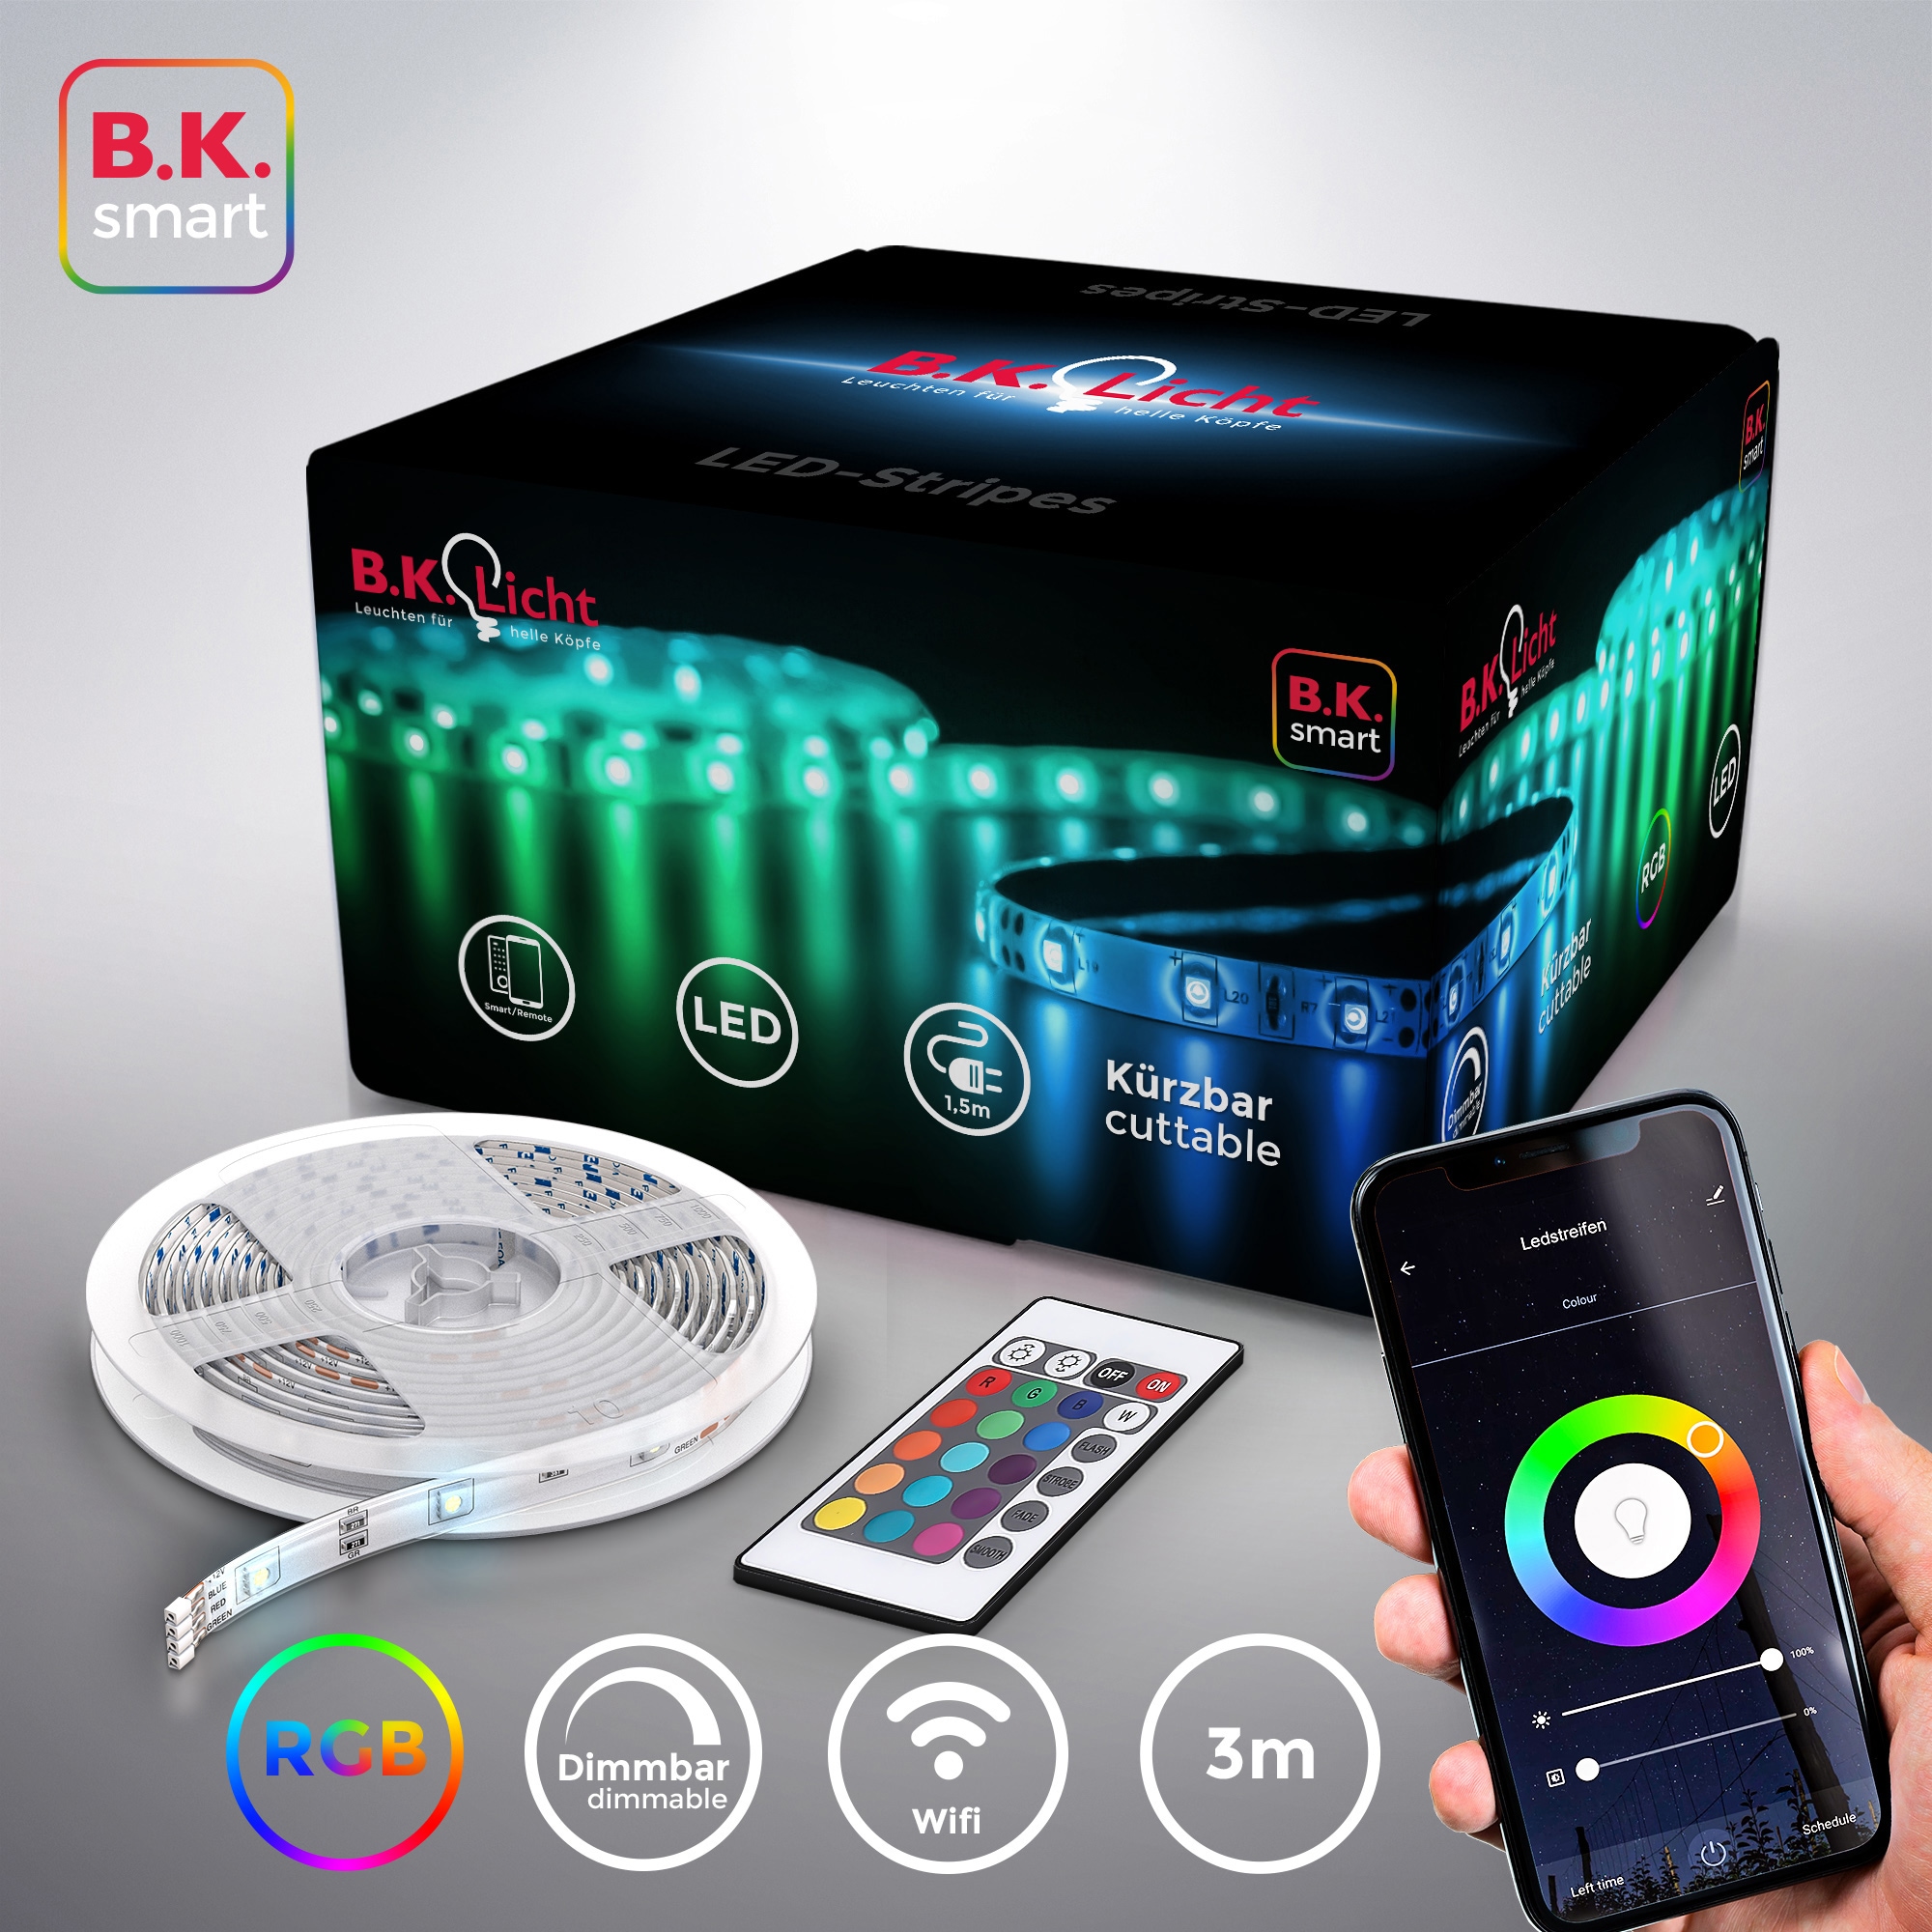 LED-Streifen, kaufen OTTO mit WiFi dimmbar 3m bei B.K.Licht Smart online App-Steuerung Band/Stripes LED Home